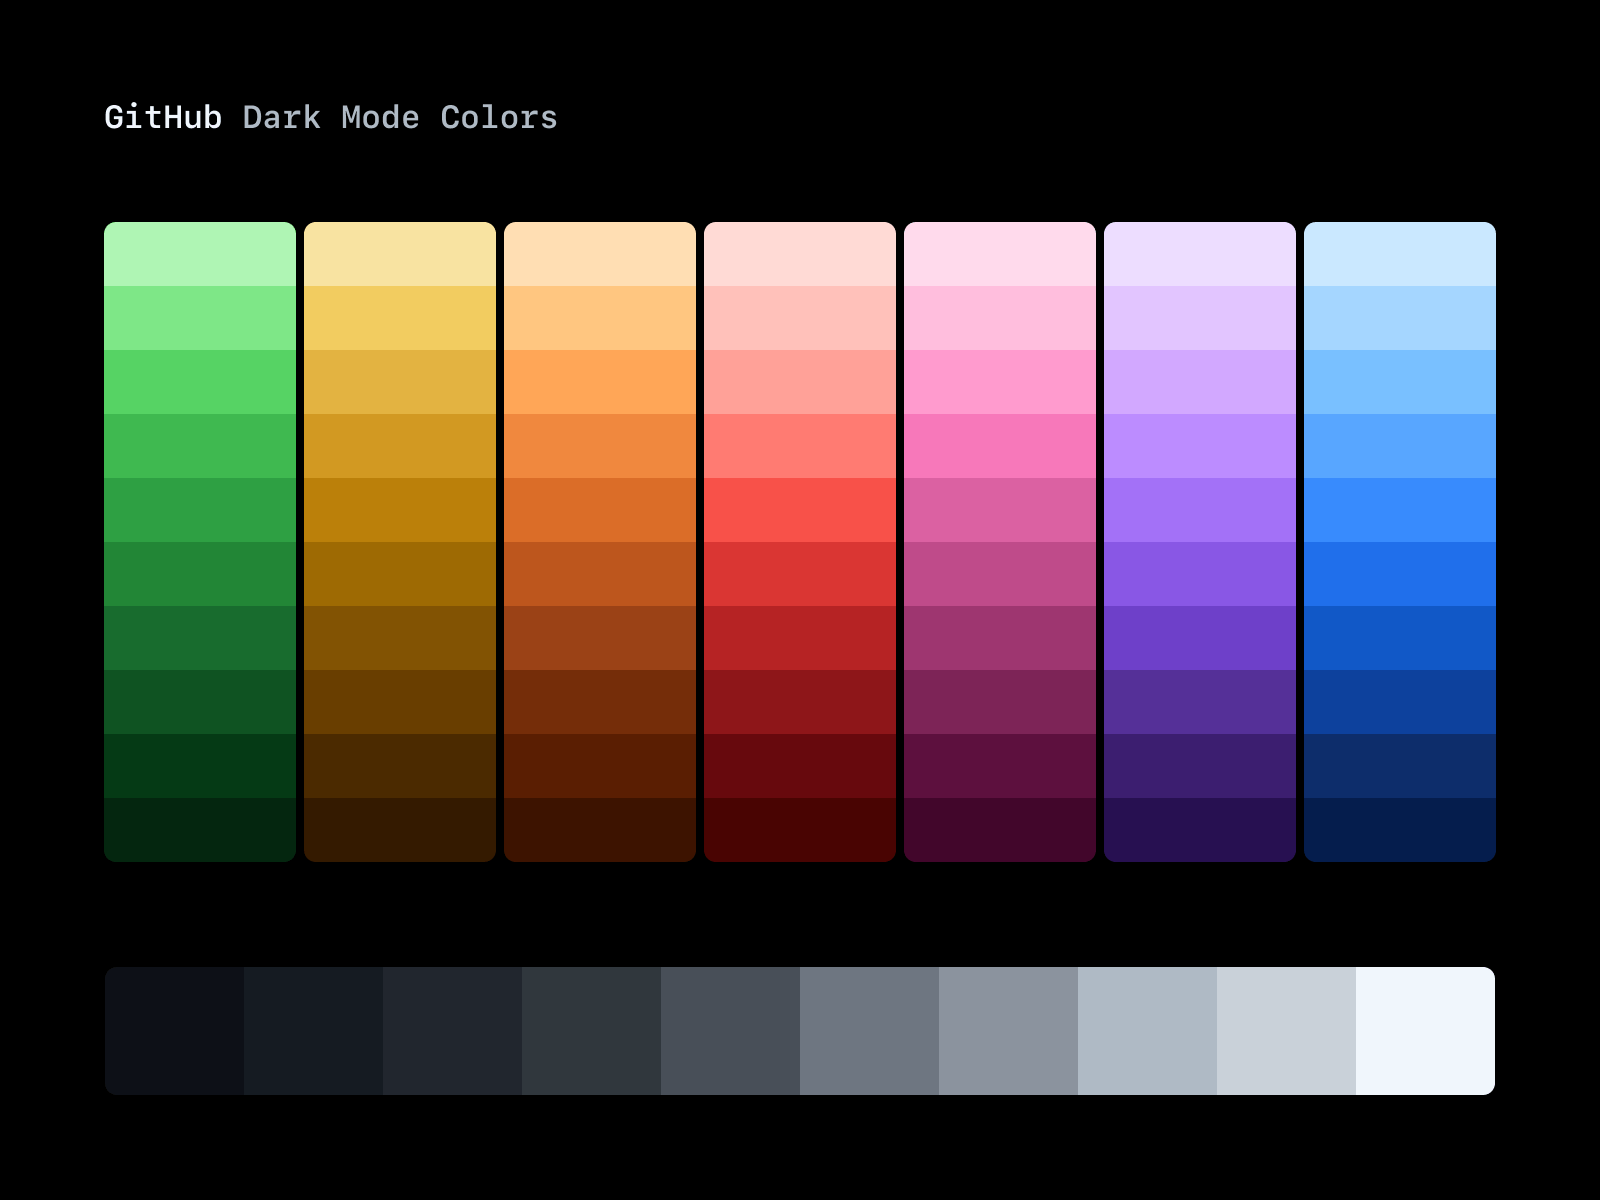 GitHub - Dark mode colors by Julius Yanik for GitHub on Dribbble